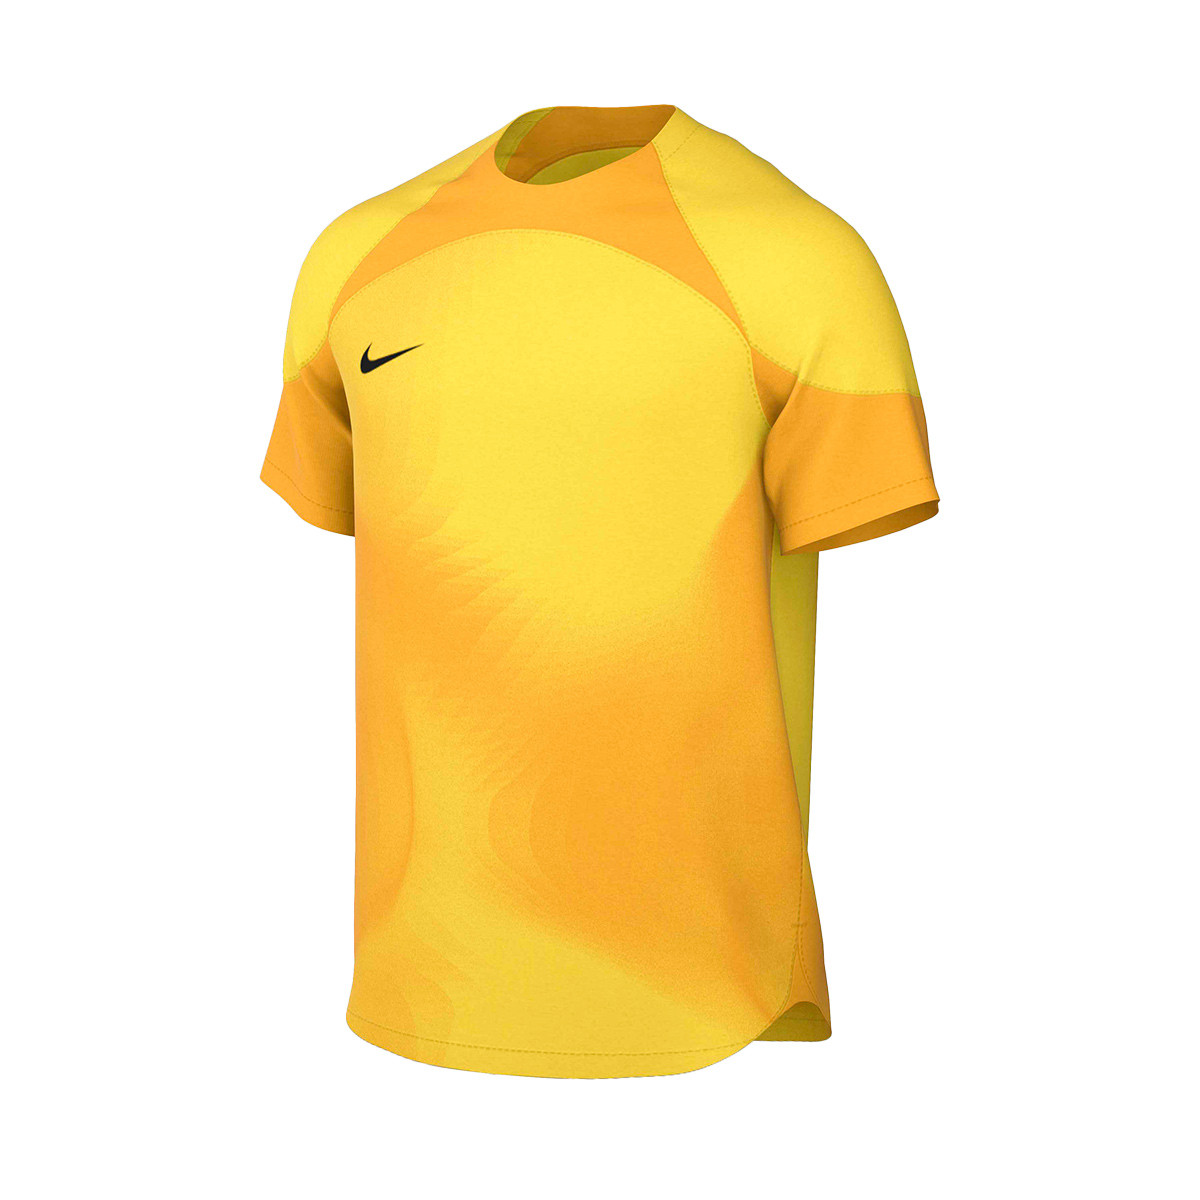 Dureza tarjeta limpiar Camiseta Nike Gardien IV GK m/c Tour yellow-University gold - Fútbol Emotion